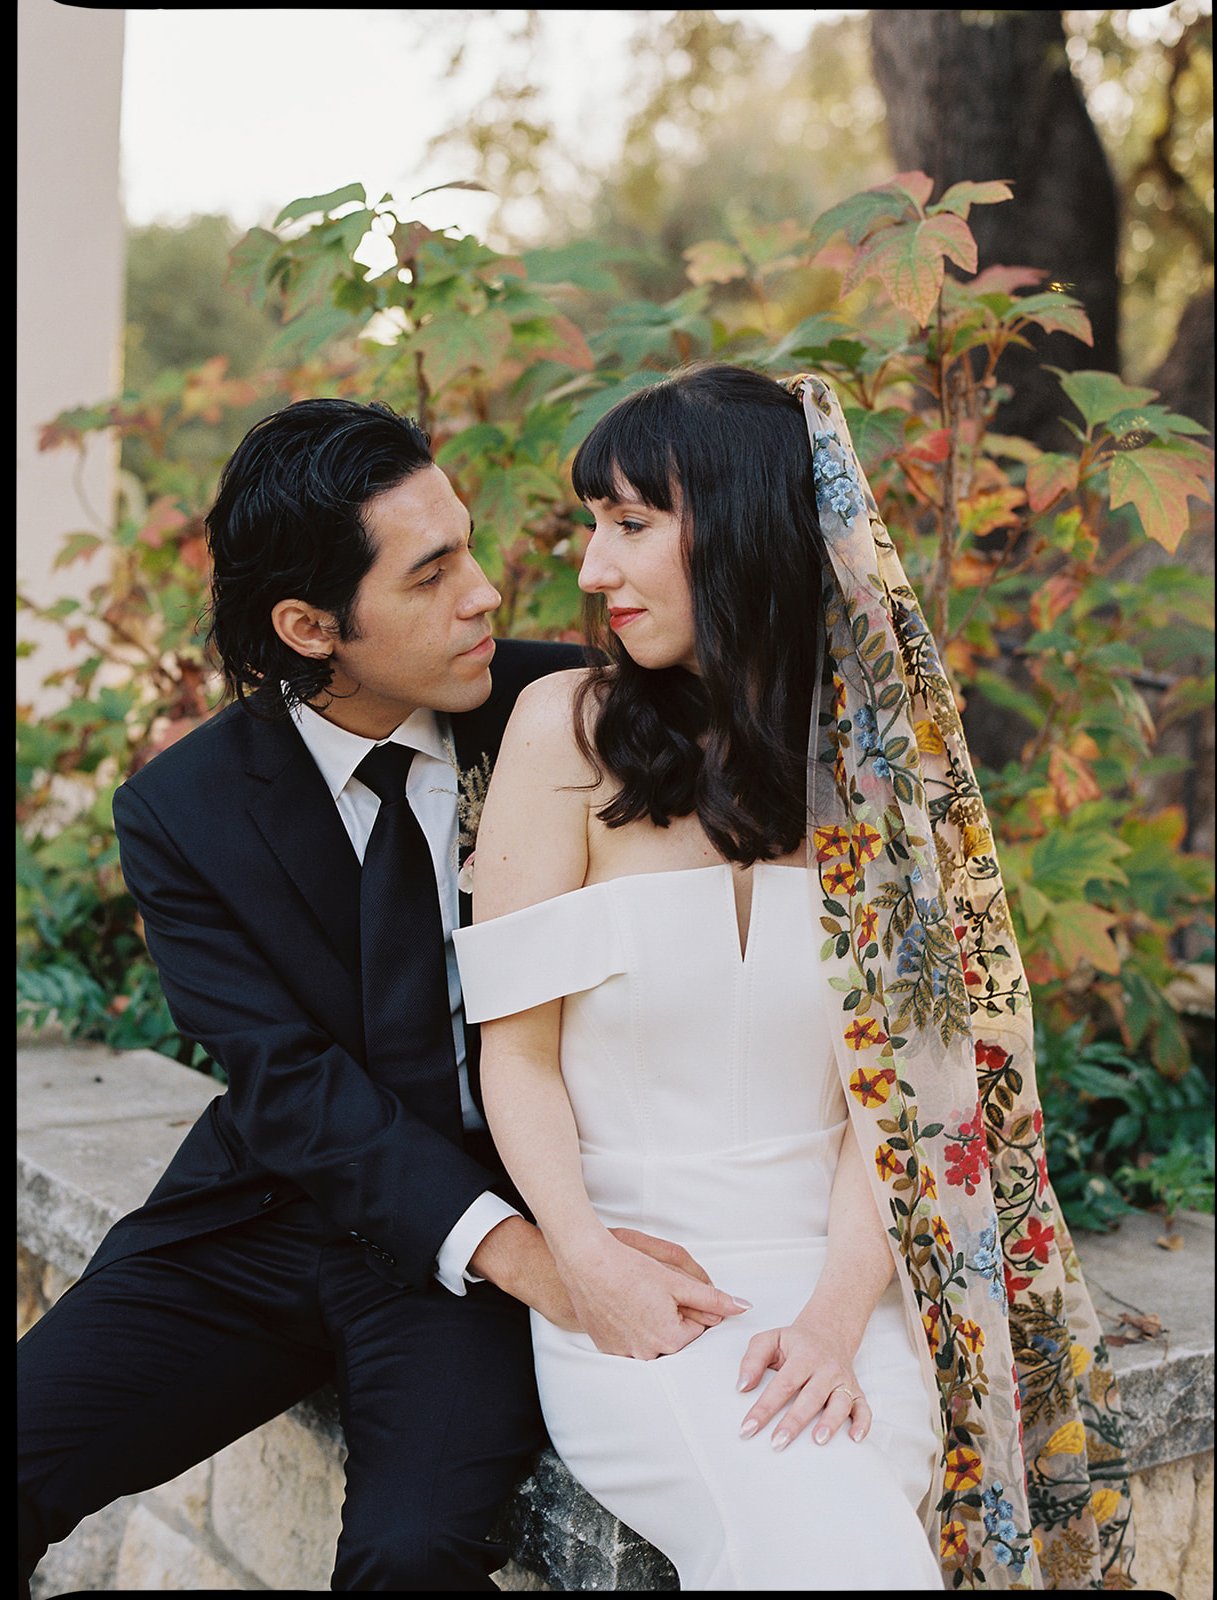 Best-Austin-Wedding-Photographers-Elopement-Film-35mm-Asheville-Santa-Barbara-Laguna-Gloria-43.jpg